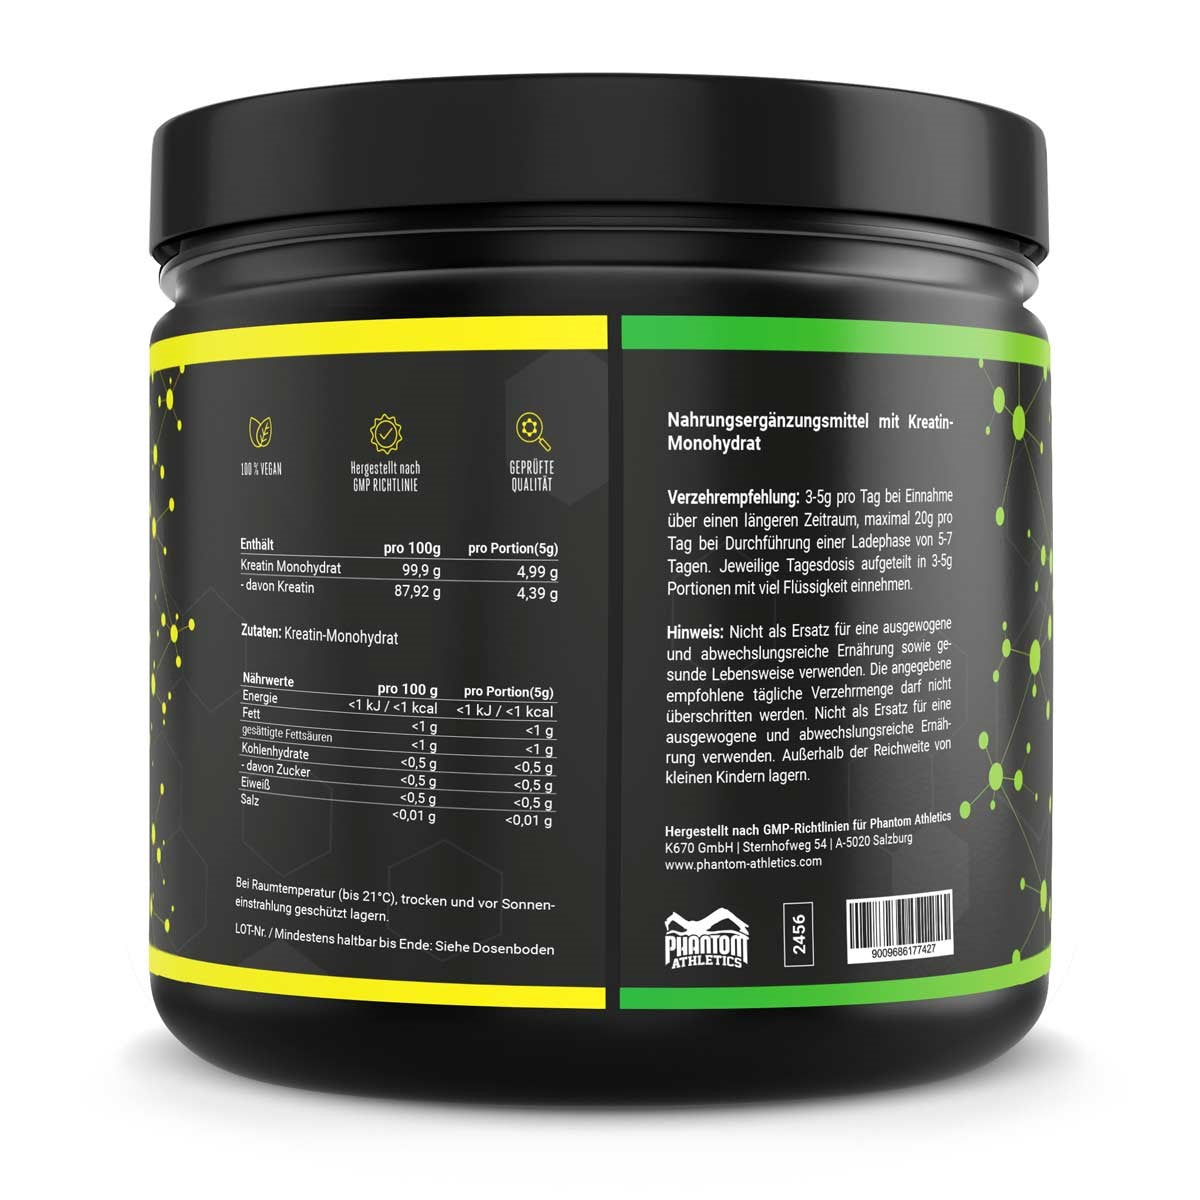 Phantom Kreatin Monohydrat Pulver für mehr Power und Energie im Kampfsport mit hochwertigen Inhaltsstoffen.